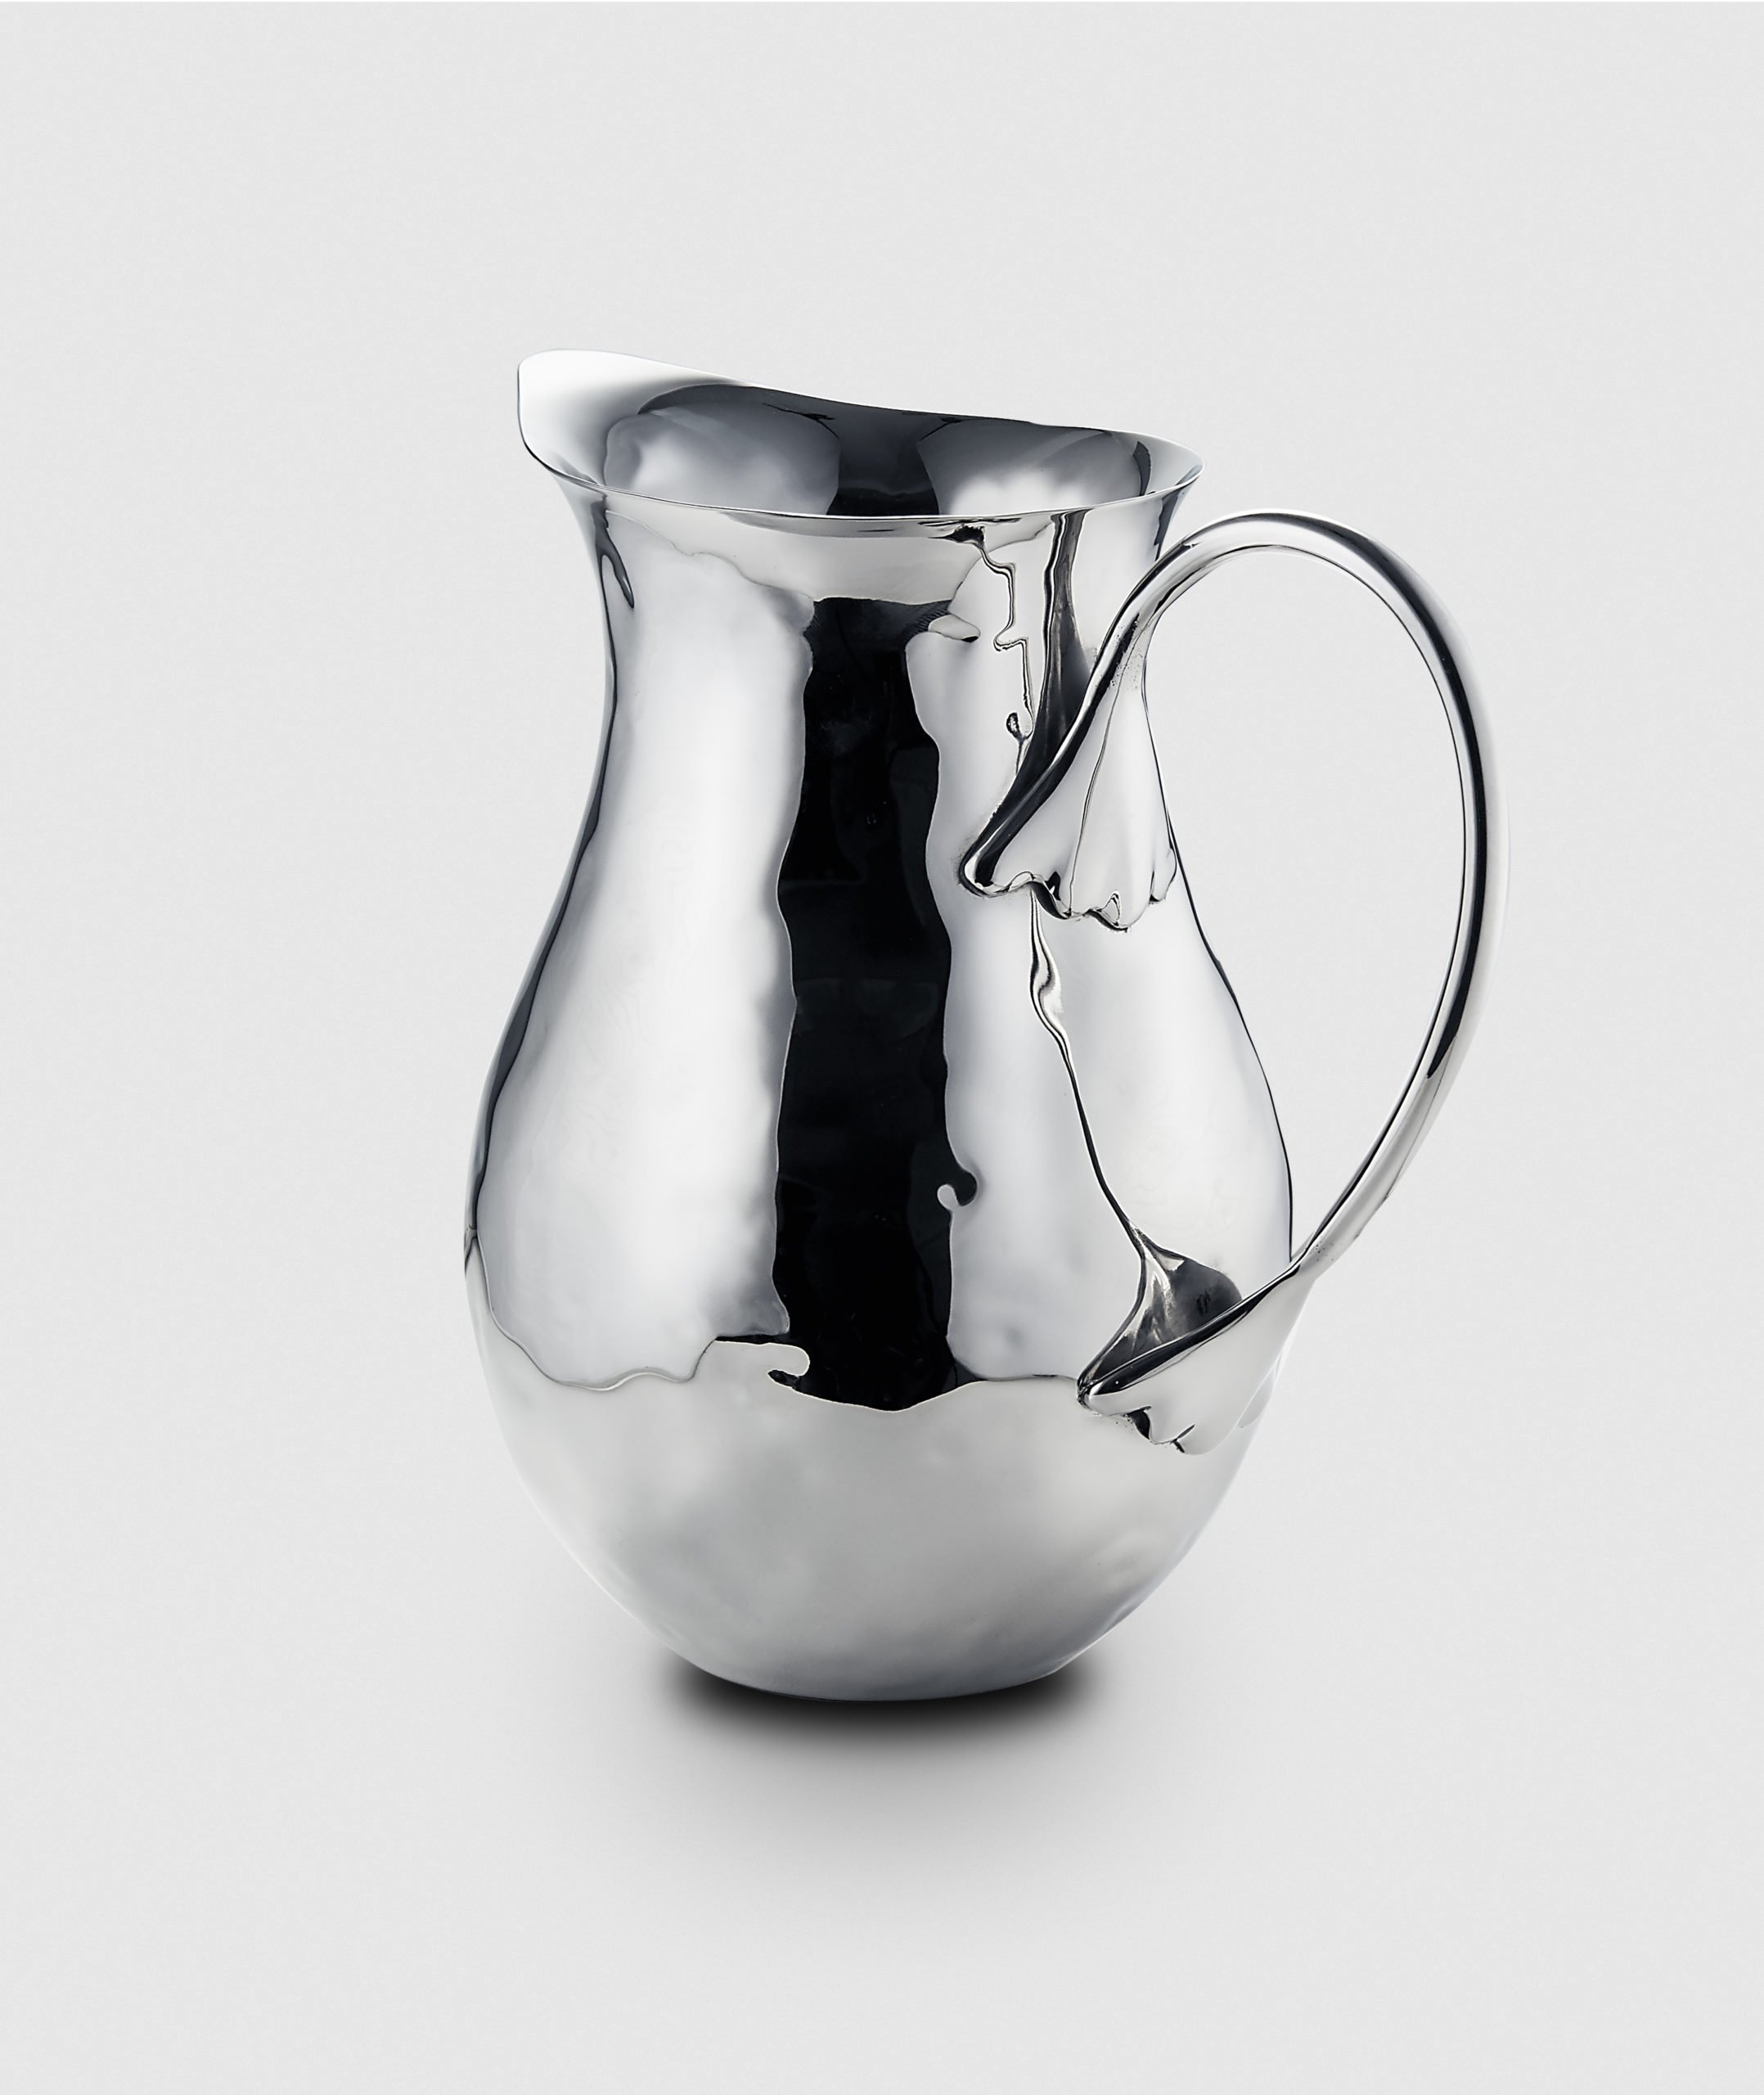 New. Mary Jurek Design Stainless Steel Vase/Pitcher